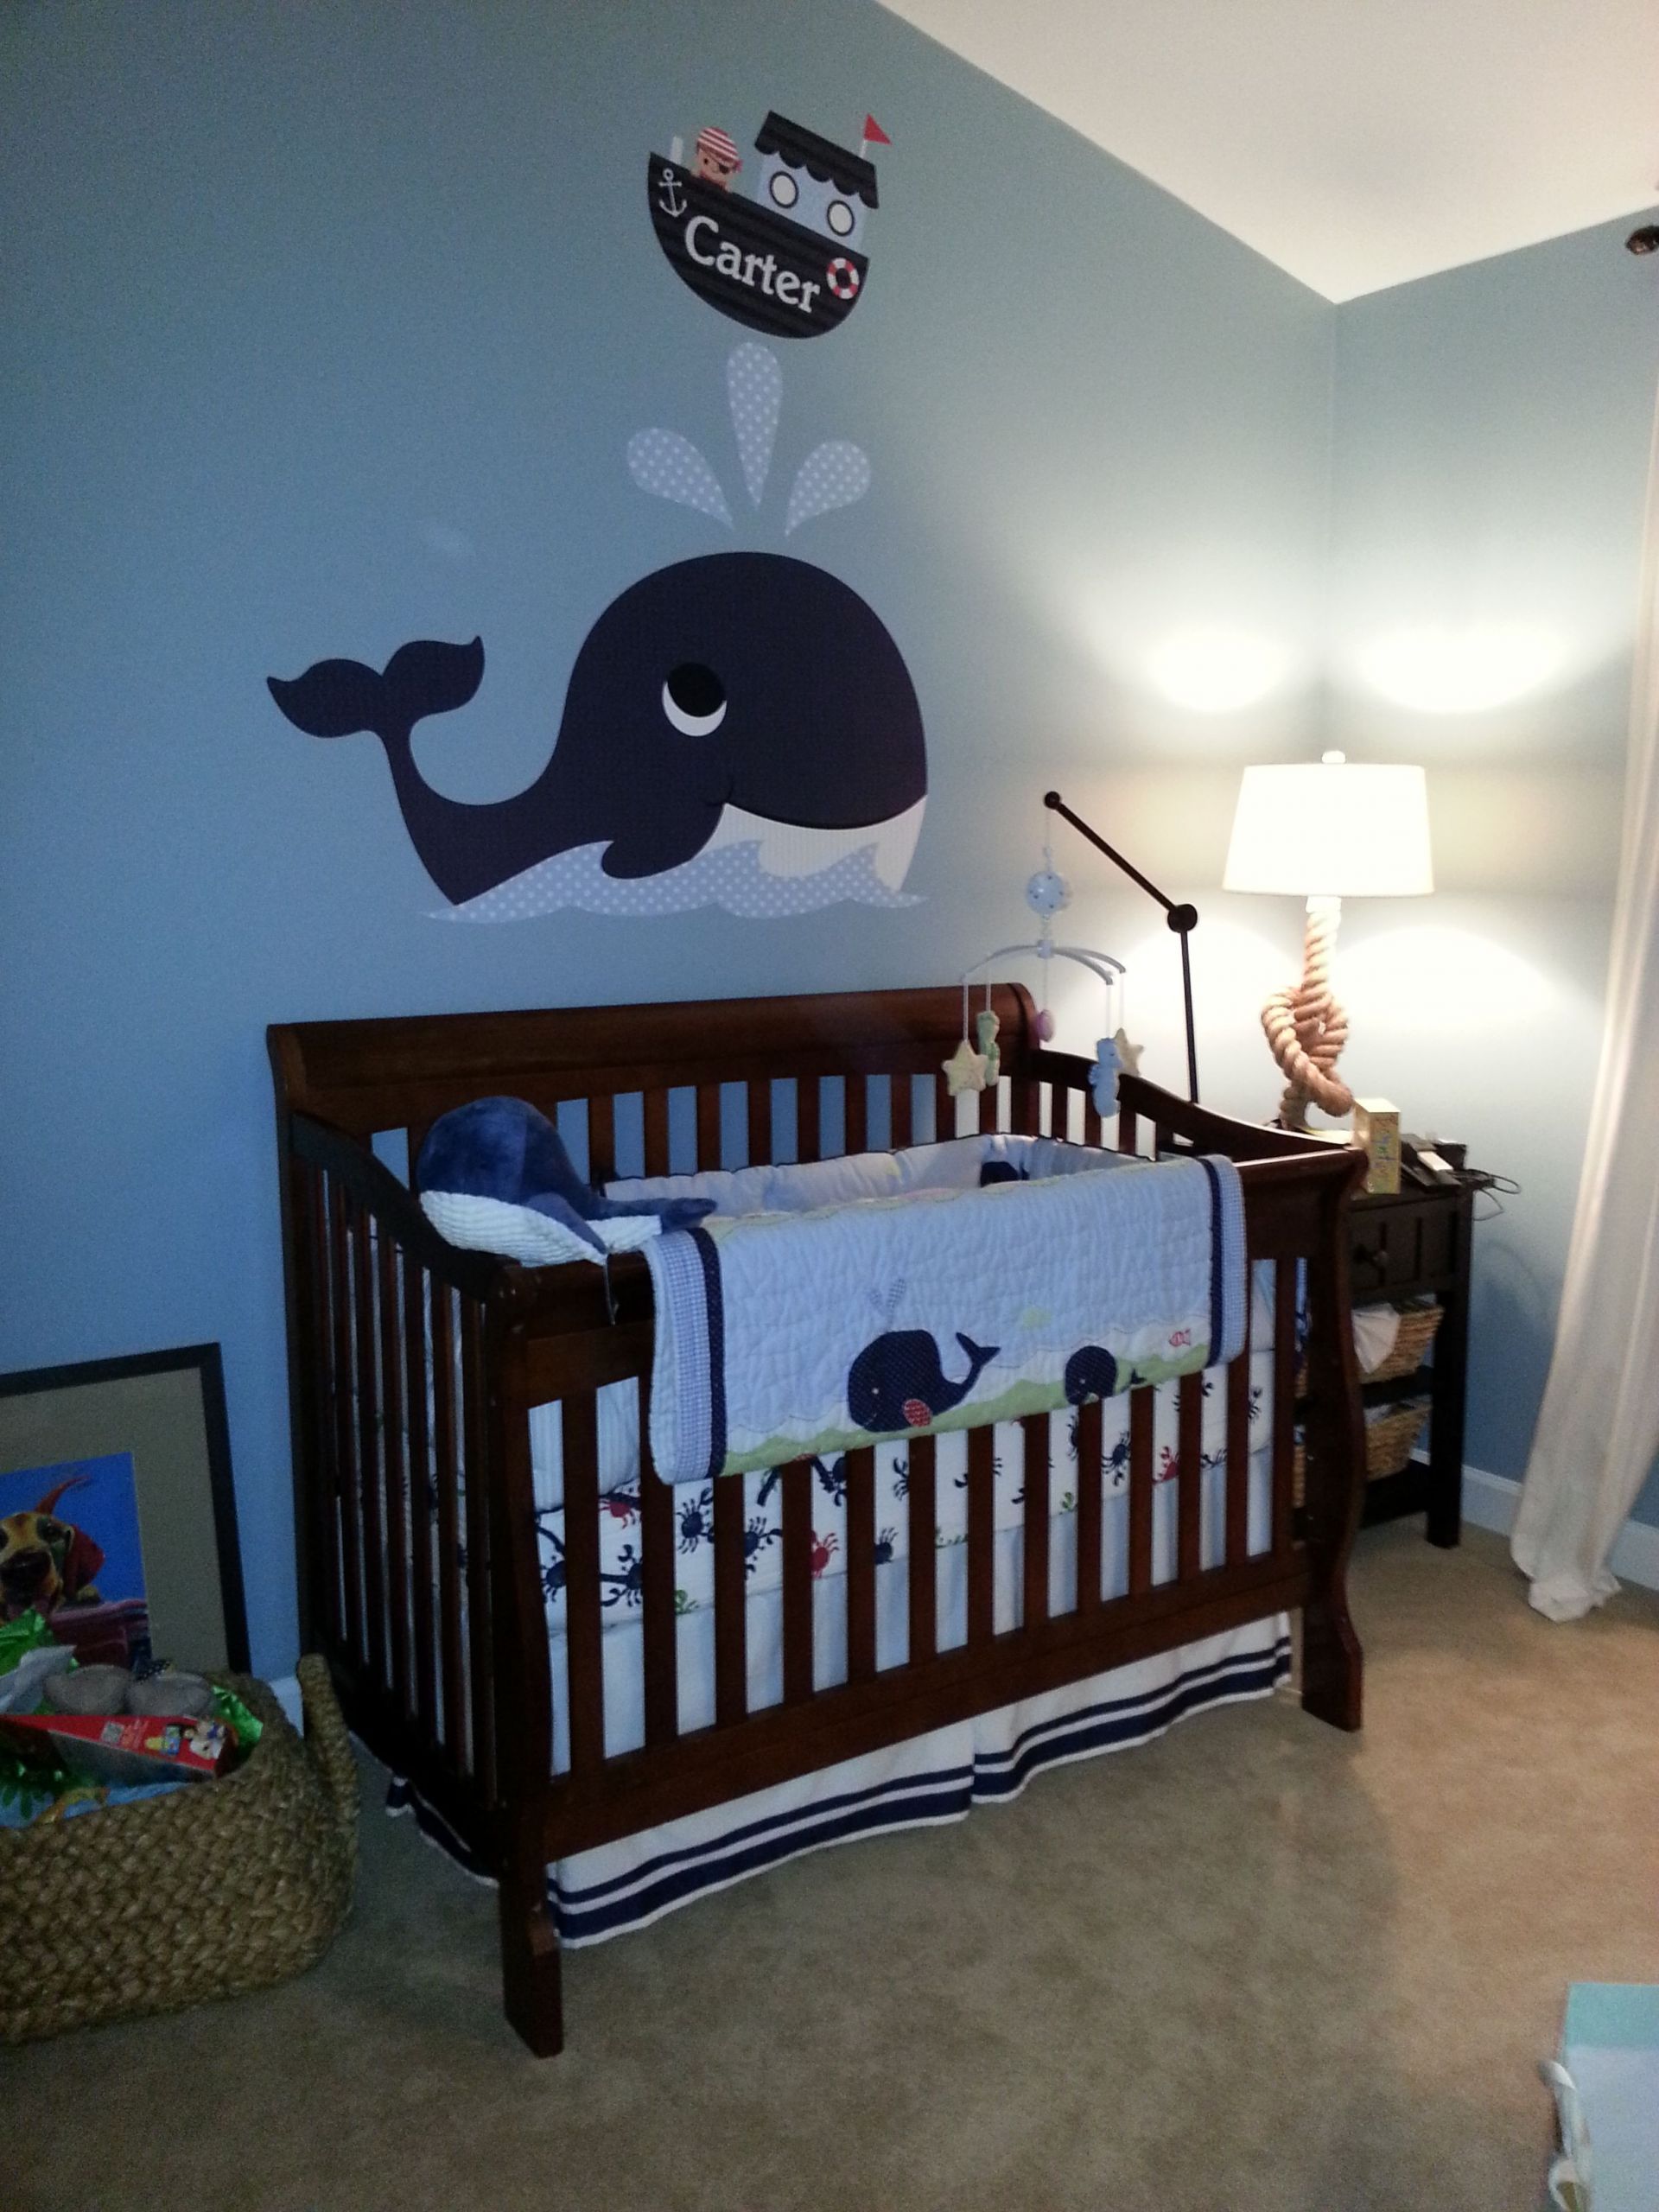 Anchor Baby Room Decor
 Whale Nursery Decor TheNurseries